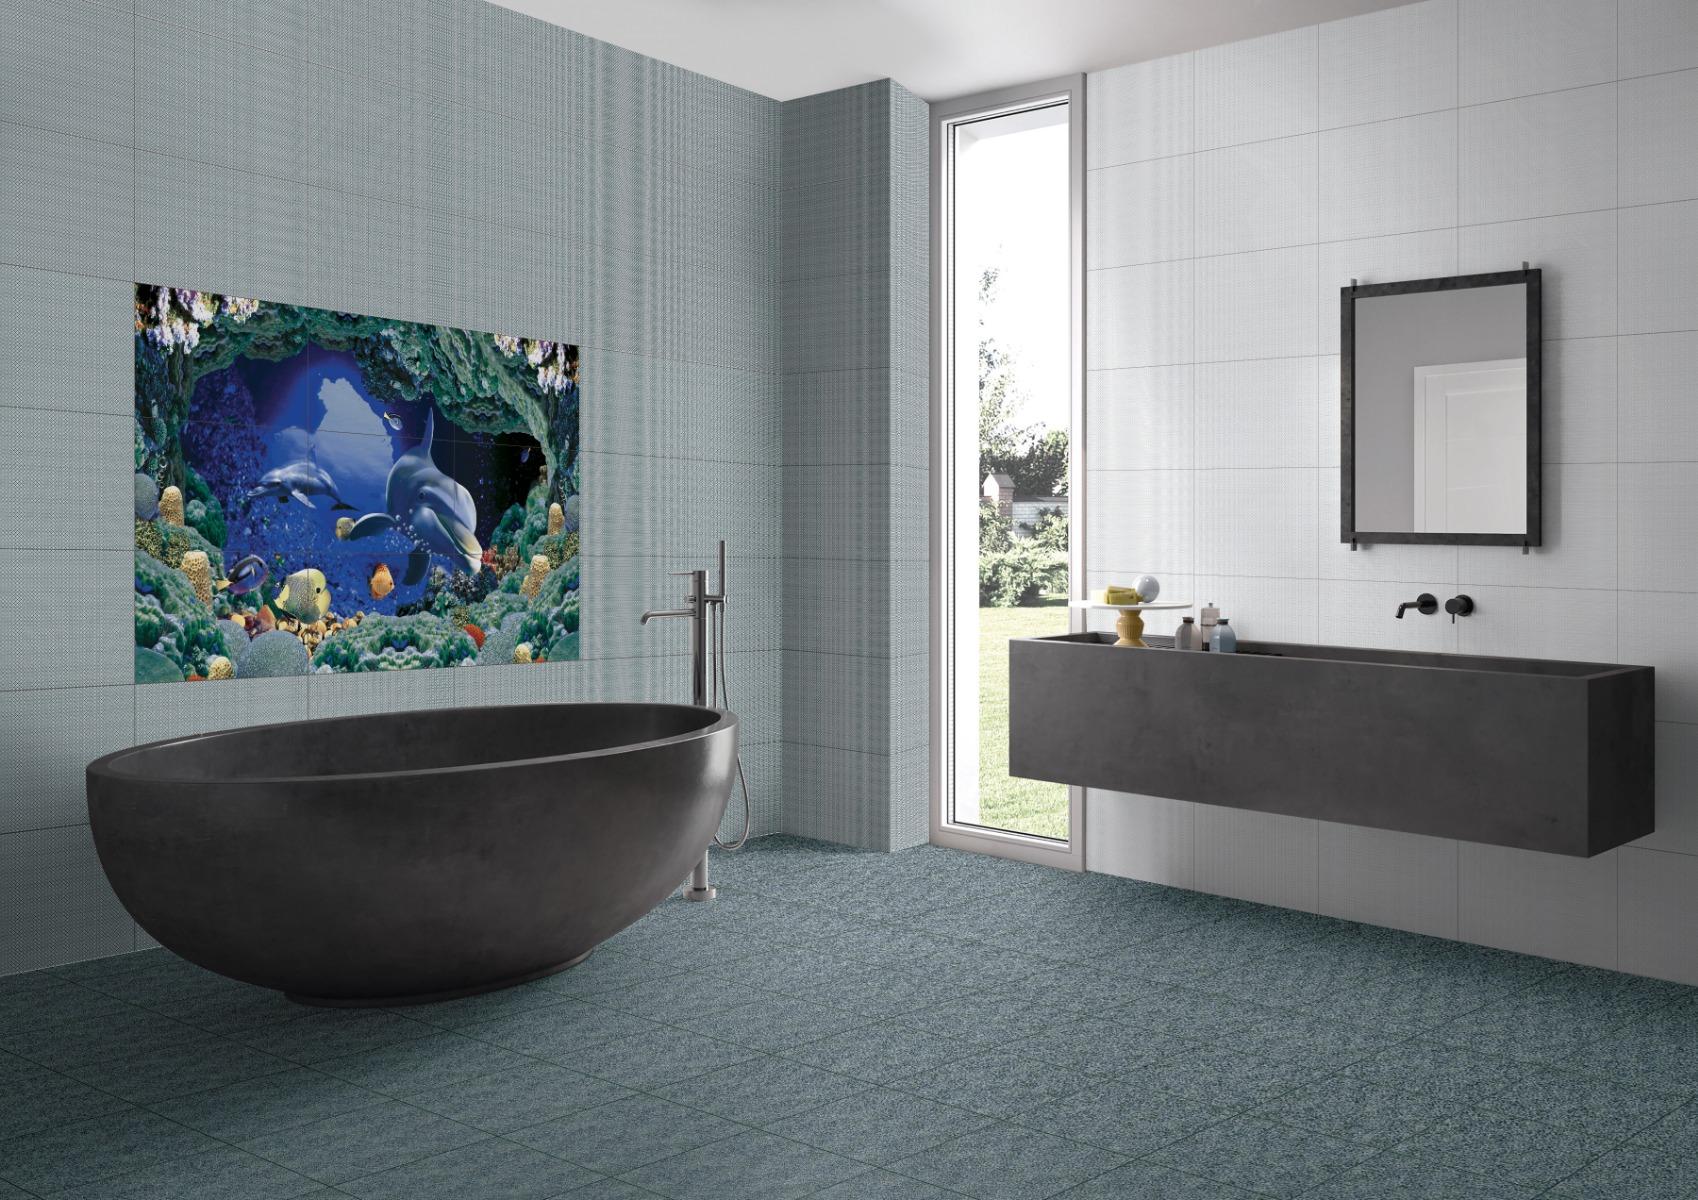 Digital Glazed Vitrified Tiles for Bathroom Tiles